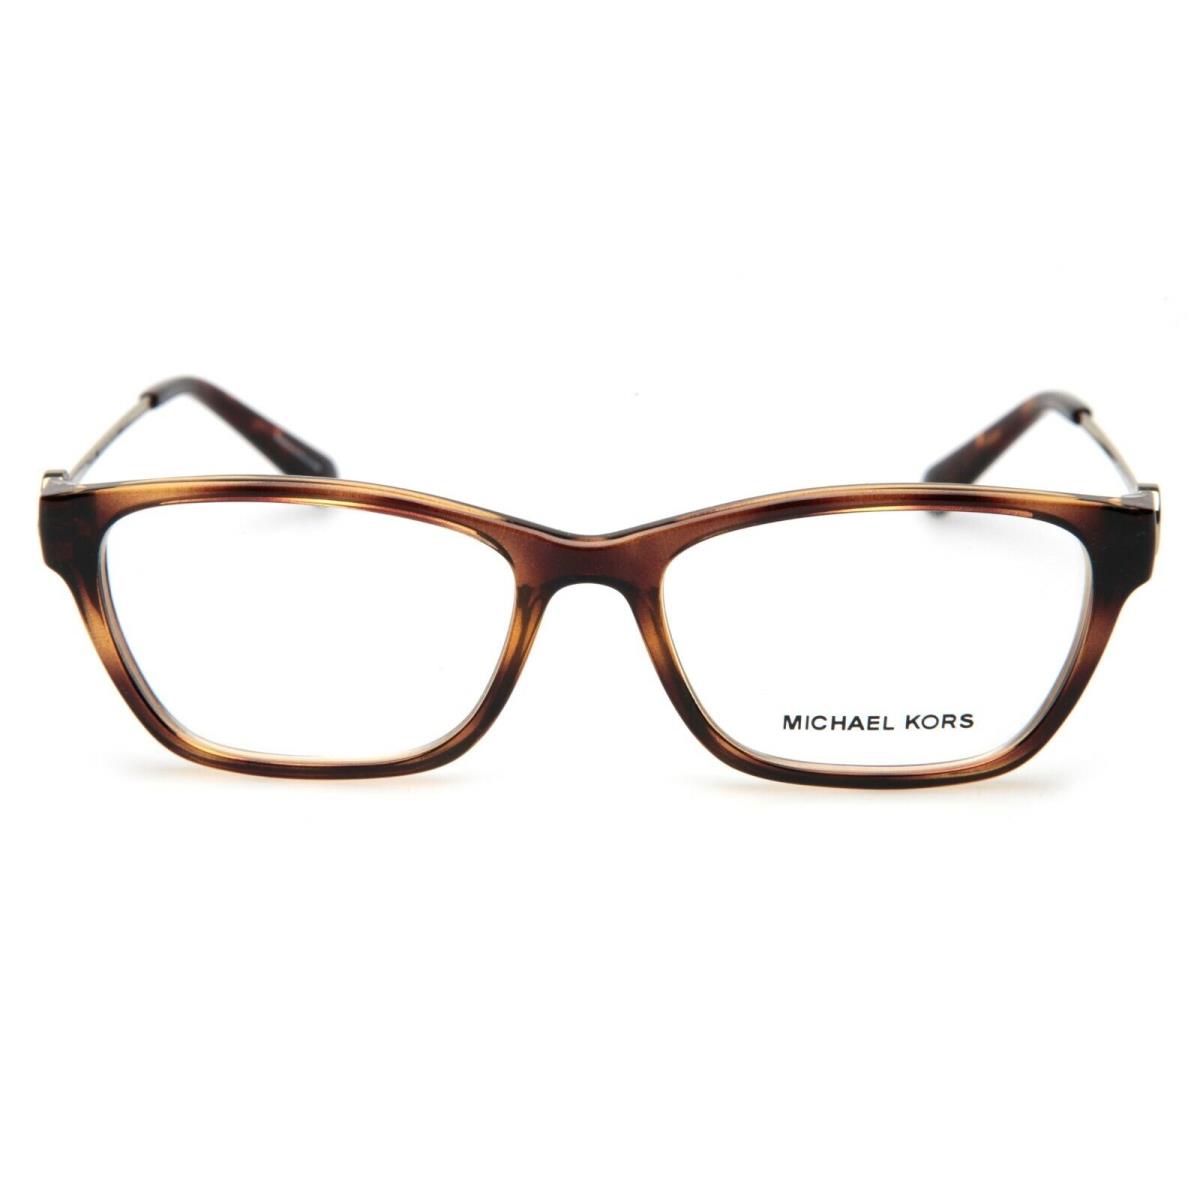 Michael Kors eyeglasses  - Frame: 0